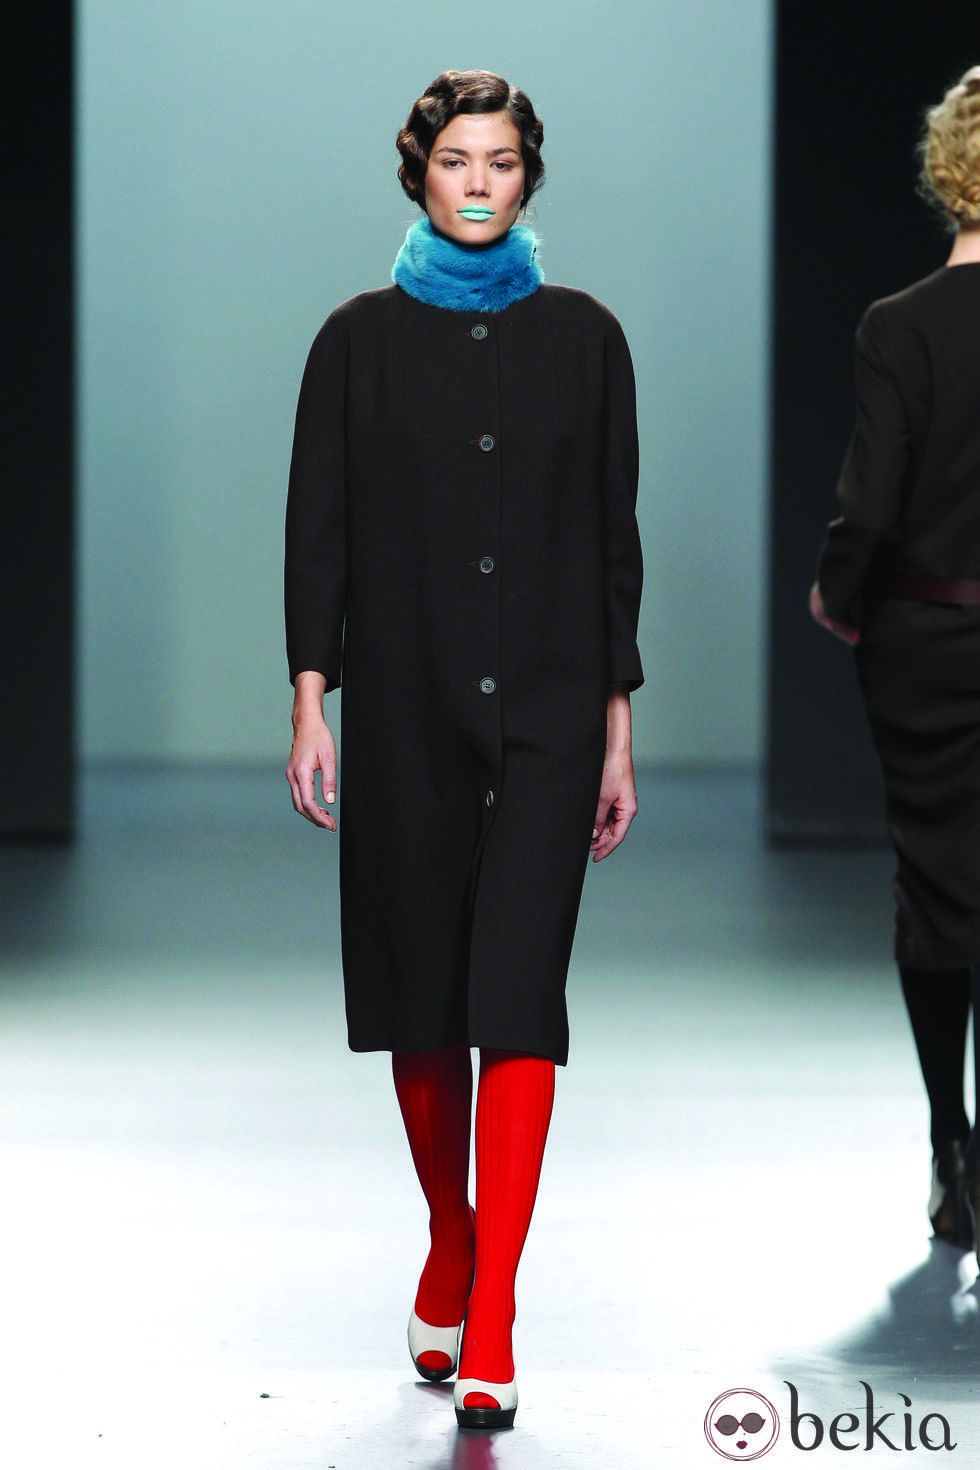 Abrigo minimal en color negro de la colección otoño/invierno 2012/2013 de Lemoniez